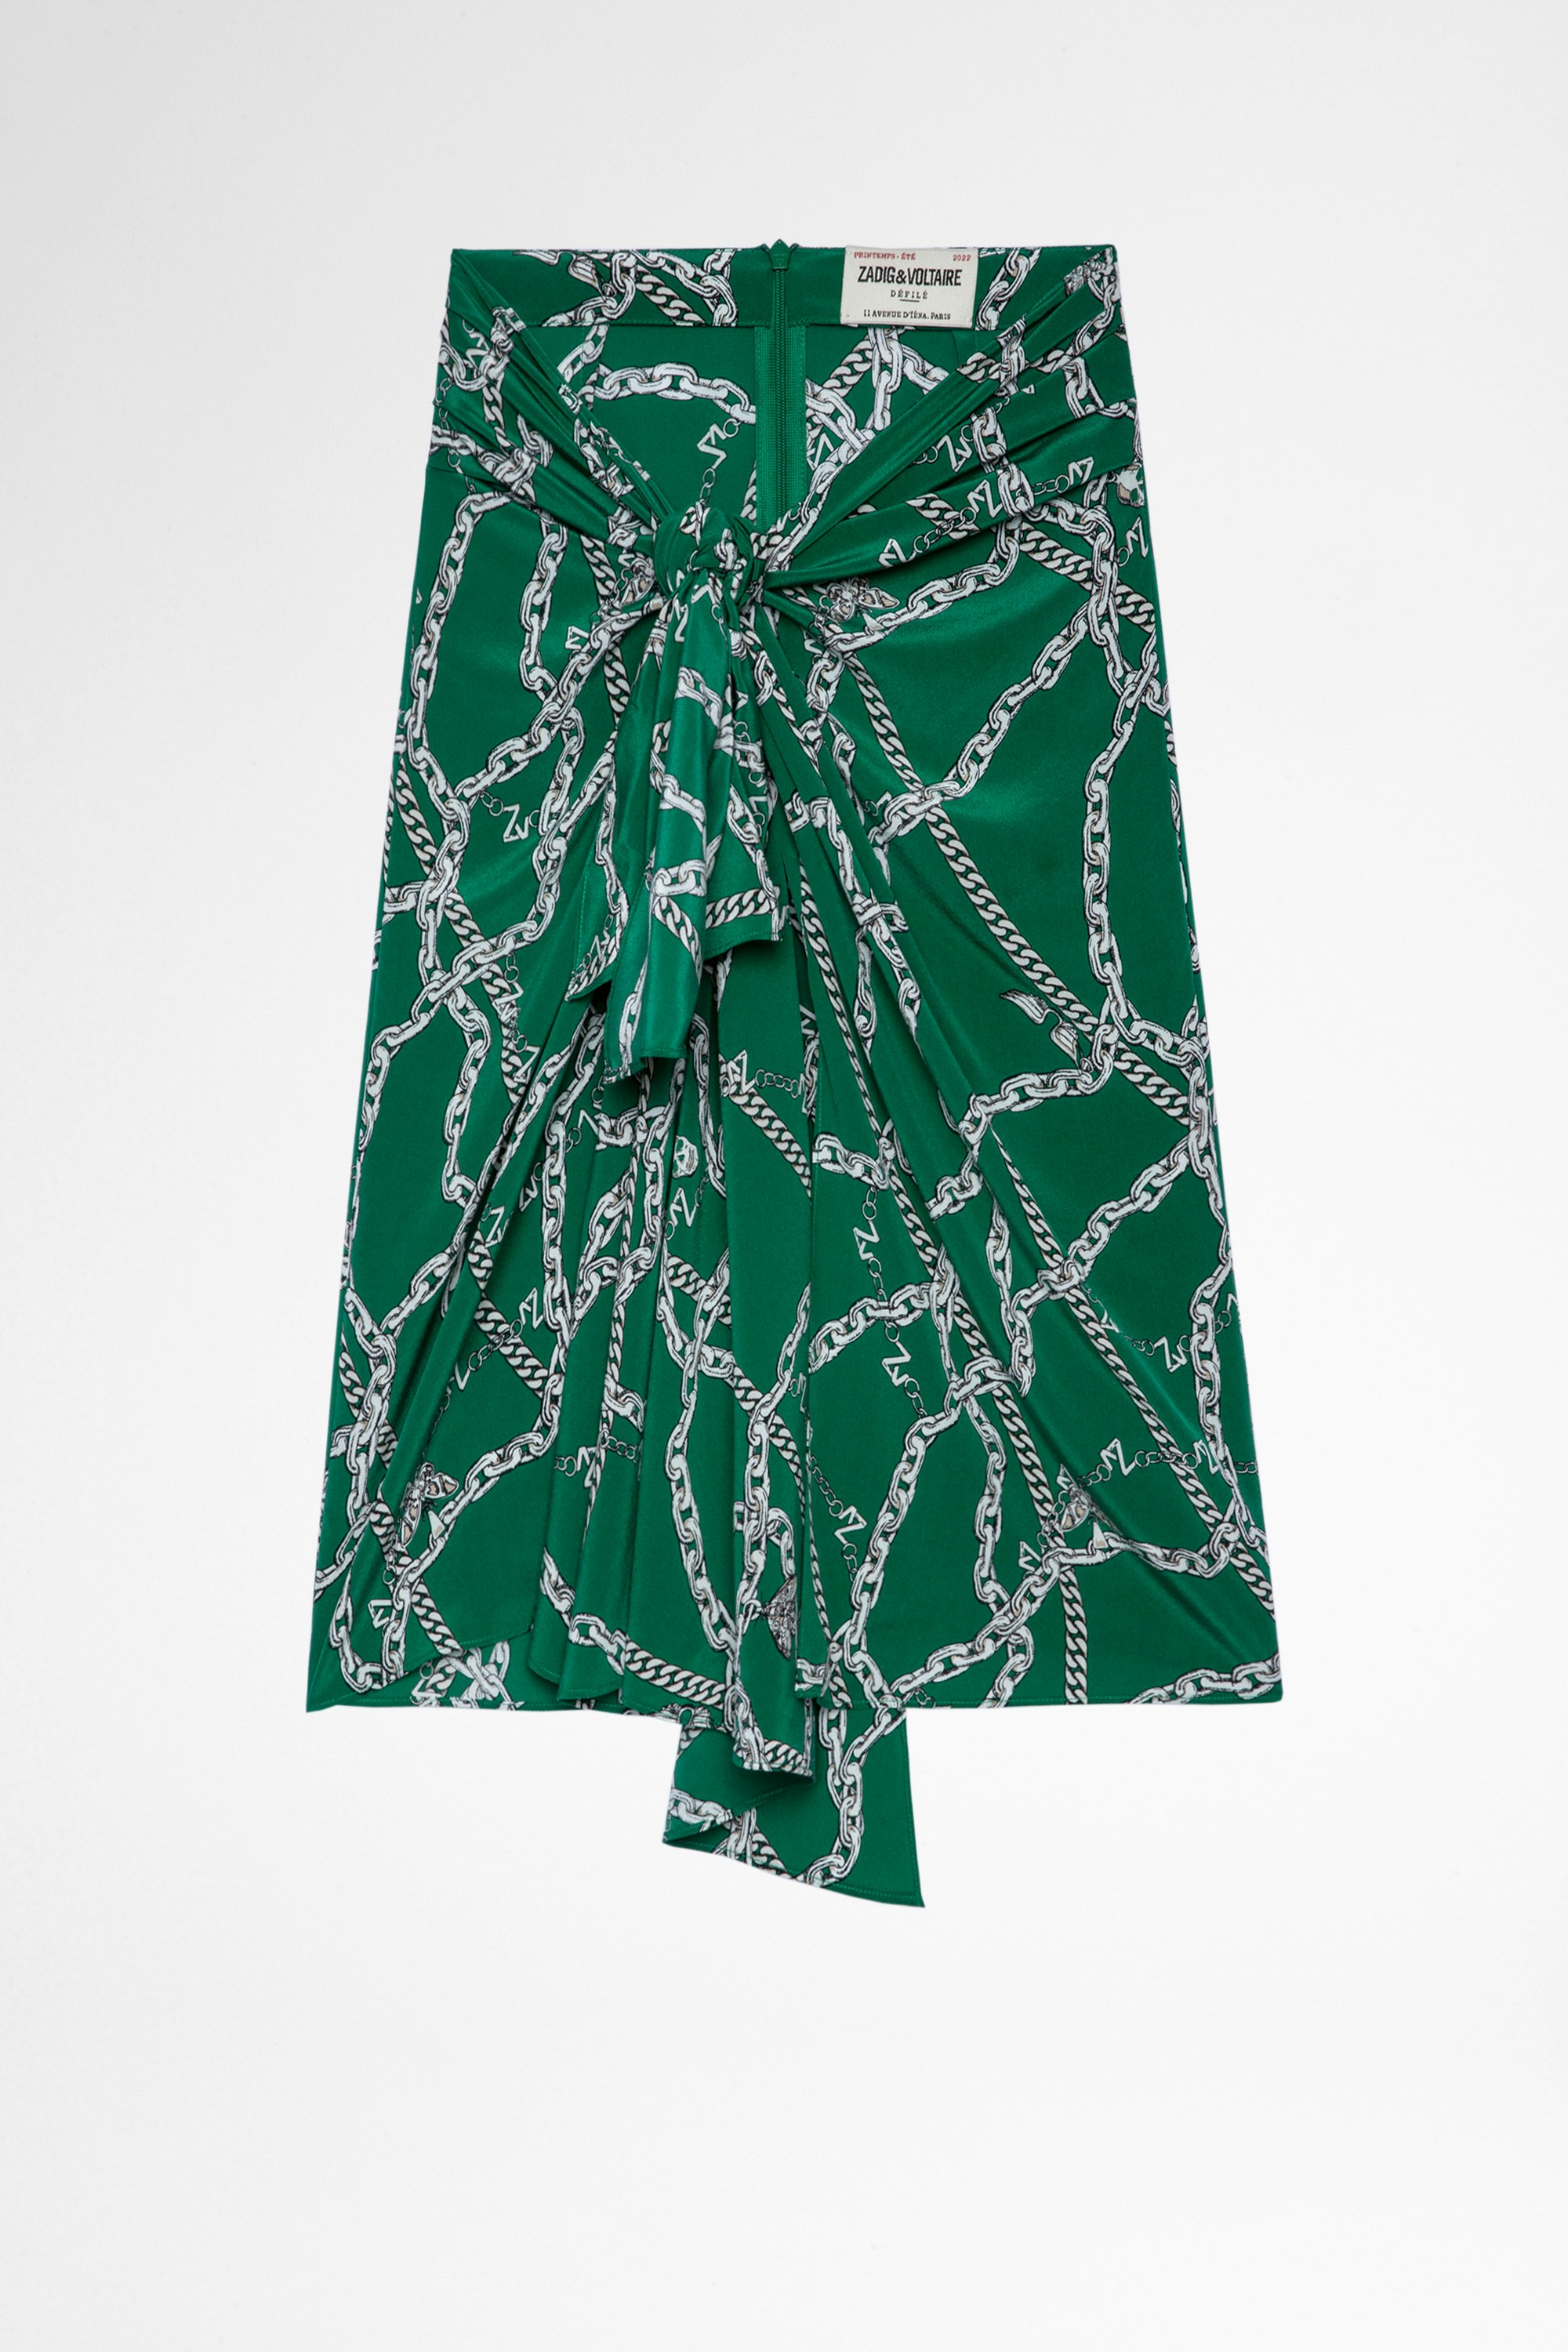 Rock Jana Seide Damenrock aus grüner drapierter Seide mit Knoten